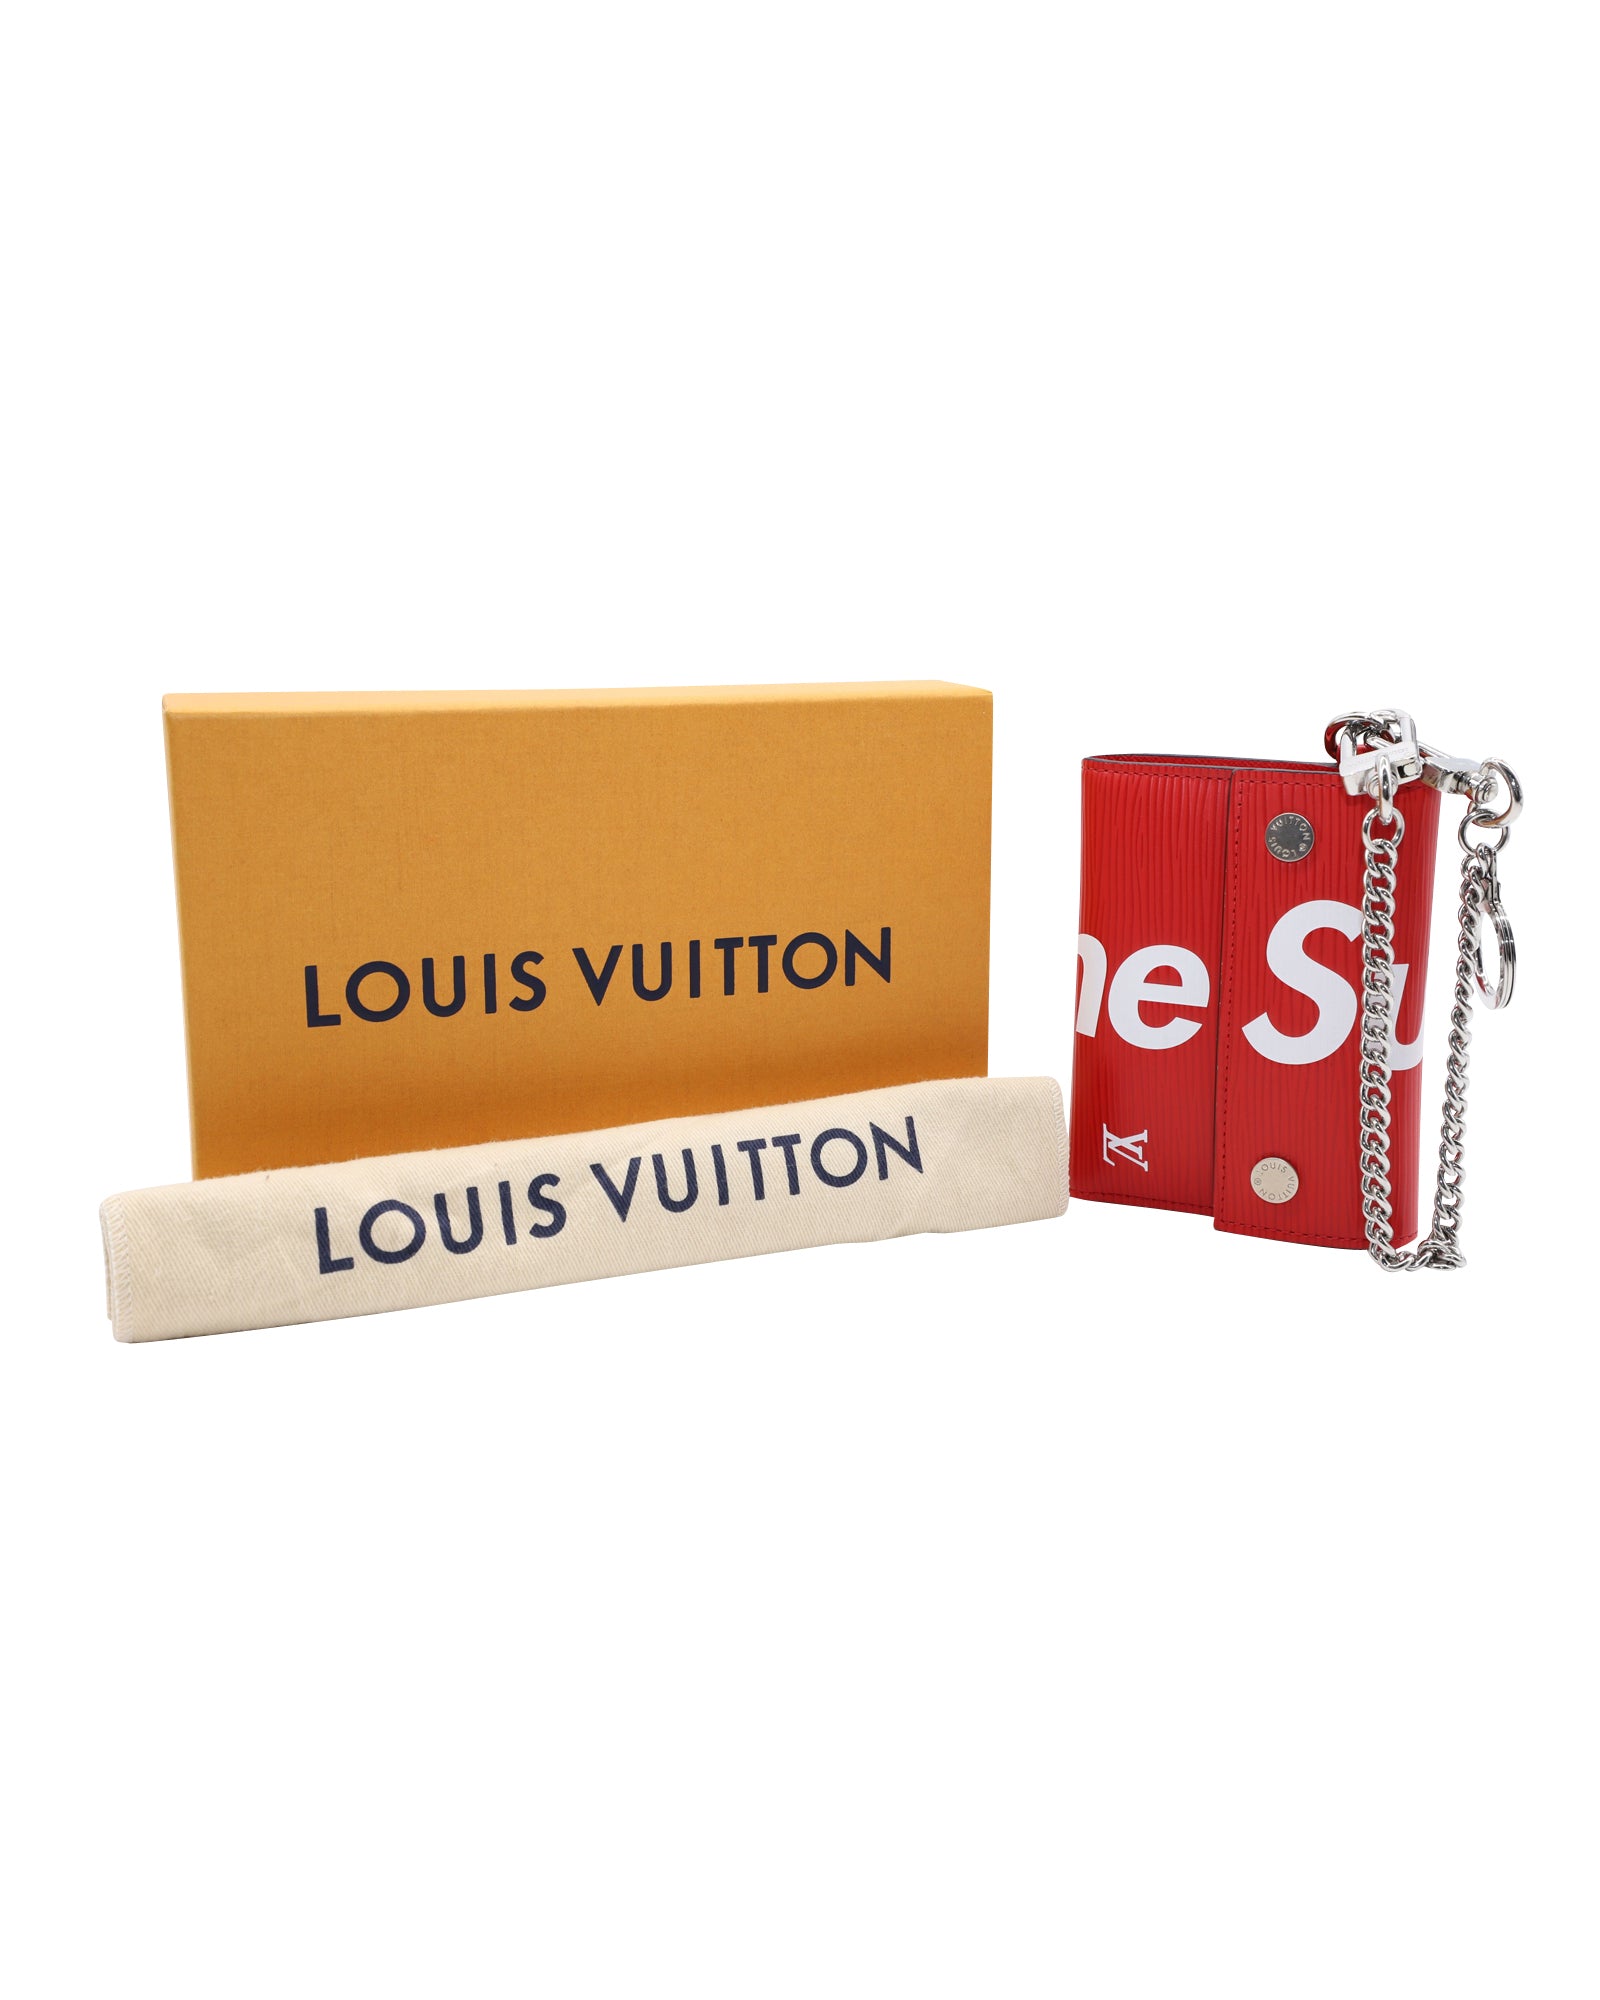 Supreme Supreme Luis Vuitton Cardholder